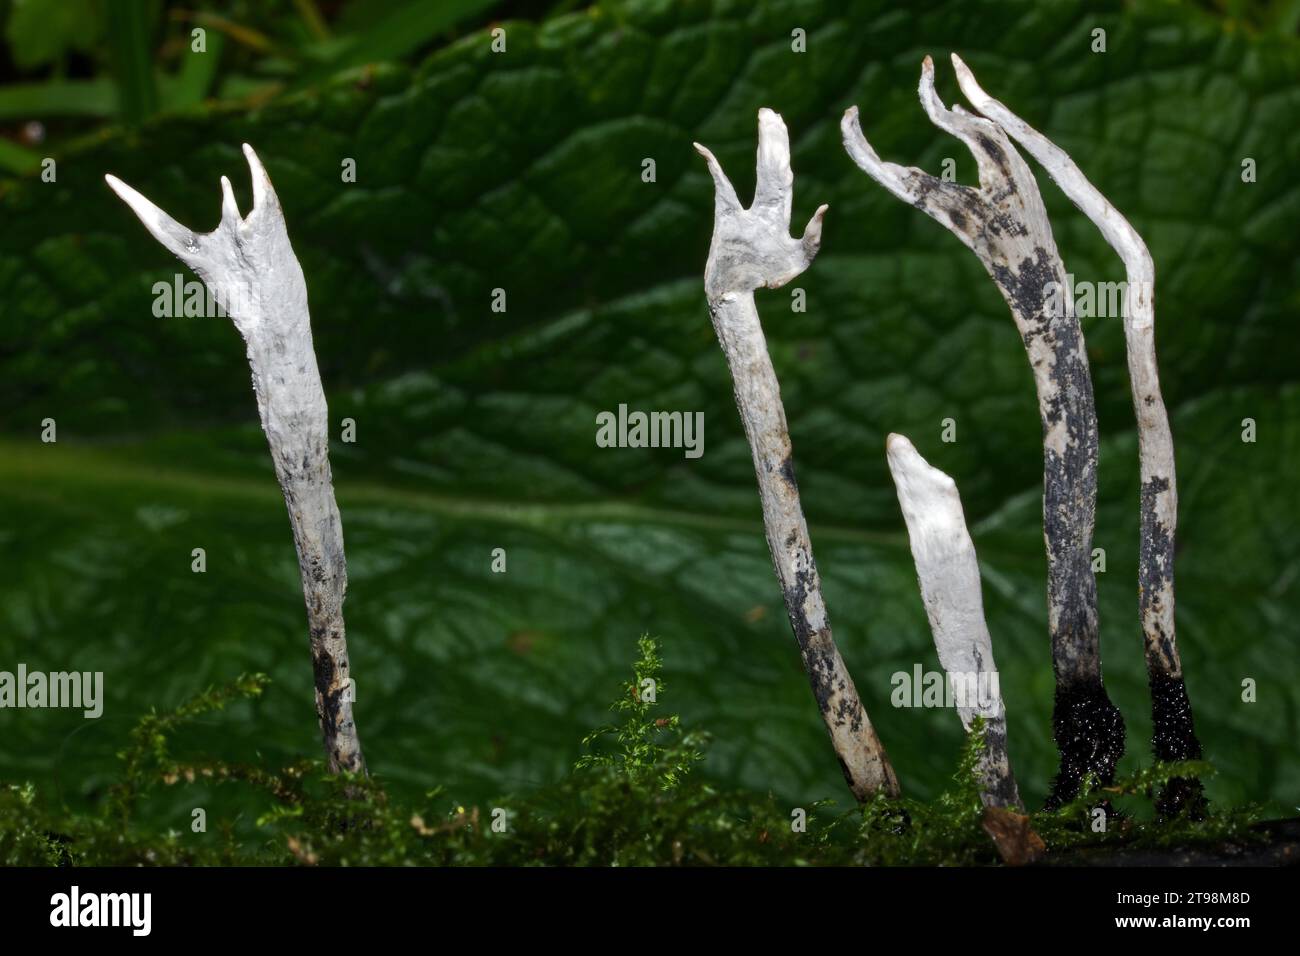 Xylaria hypoxylon (champignon du tabac à priser à la bougie) est une espèce de champignon bioluminescent qui se rencontre sur les branches tombées et les souches pourries des arbres à larges feuilles. Banque D'Images